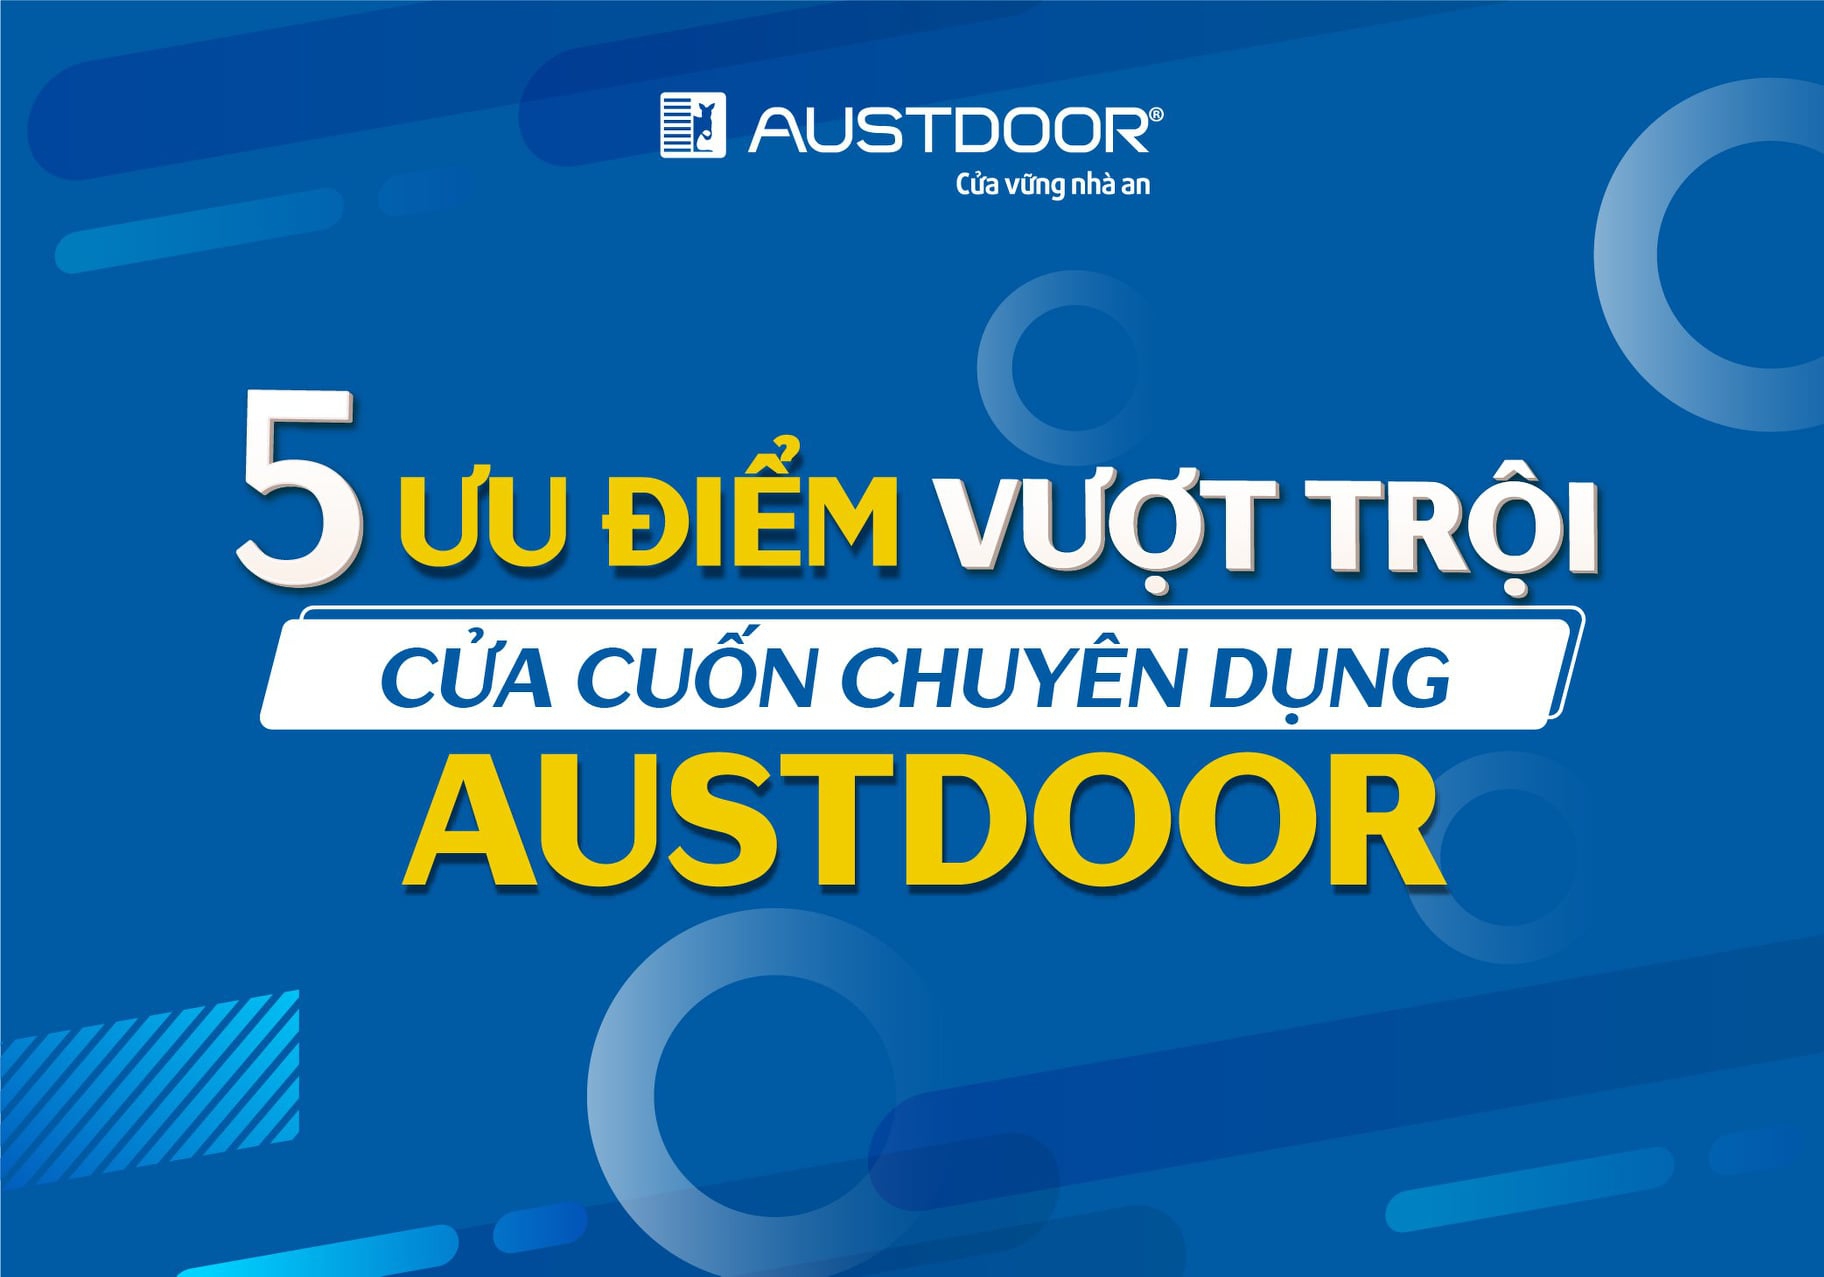 ✅ AUSTDOORCARE ✅5 ƯU ĐIỂM giúp Cửa cuốn Austdoor đáp ứng được mọi tiêu chí cho các công trình DỰ ÁN LỚN